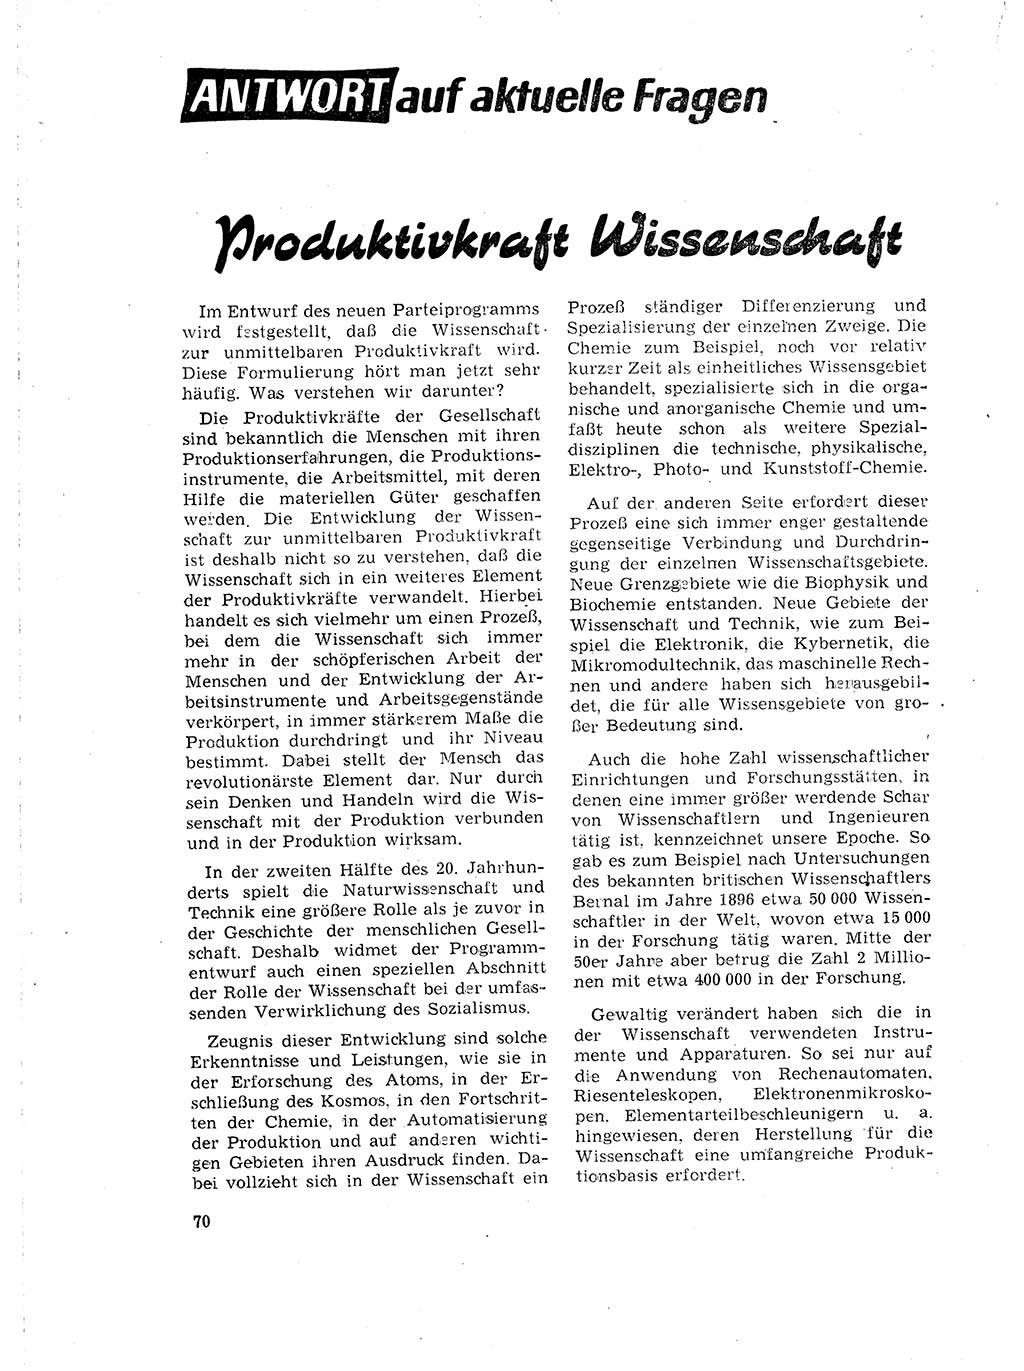 Neuer Weg (NW), Organ des Zentralkomitees (ZK) der SED (Sozialistische Einheitspartei Deutschlands) für Fragen des Parteilebens, 18. Jahrgang [Deutsche Demokratische Republik (DDR)] 1963, Seite 70 (NW ZK SED DDR 1963, S. 70)